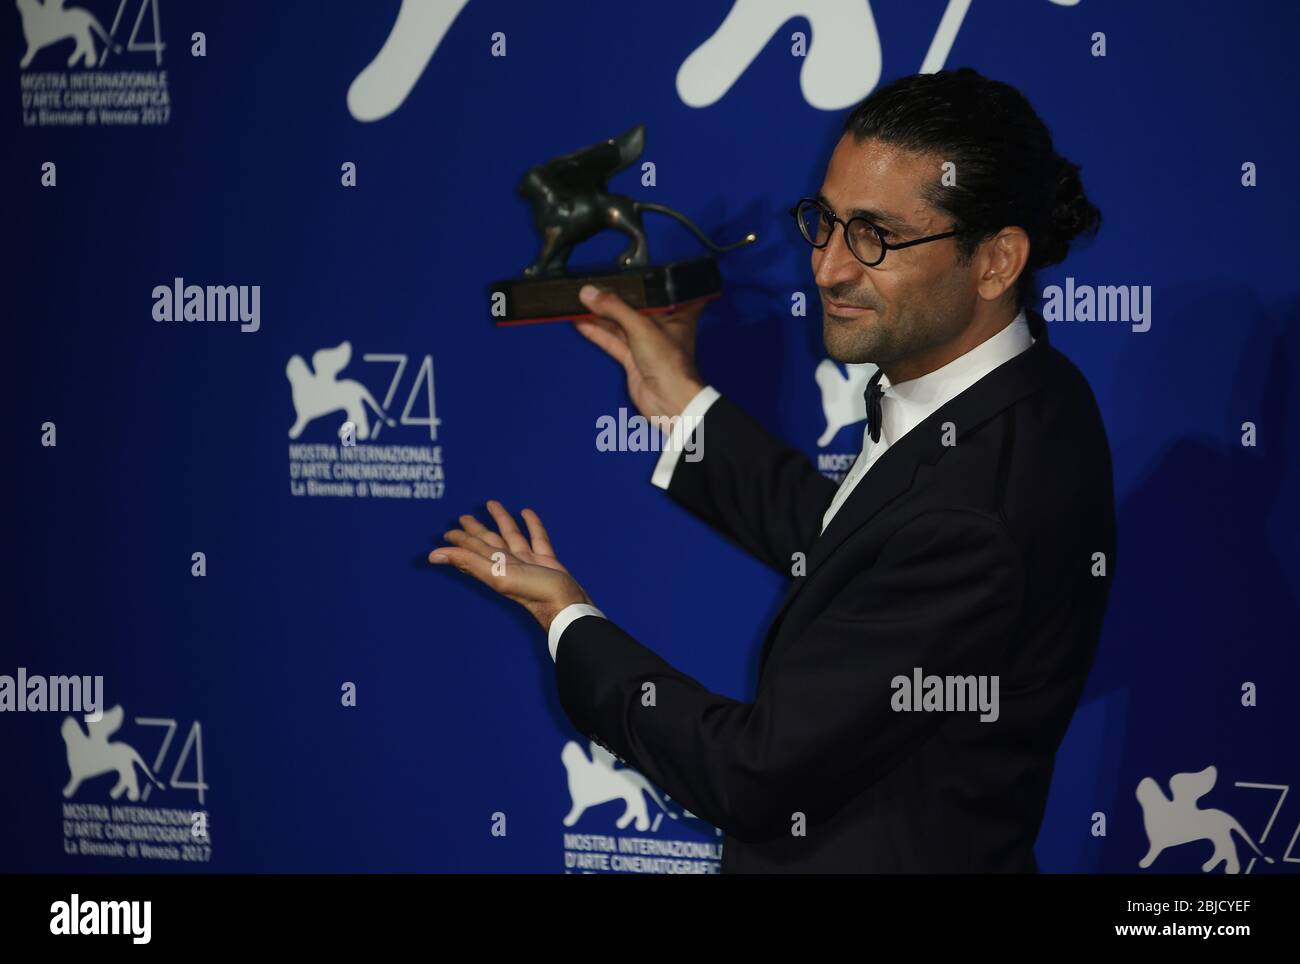 Venise, Italie. 09 septembre 2017 : Alireza Khatam pose avec le prix Orizzonti pour « Los Versos Del Olvido » au photocaltous des lauréats Banque D'Images